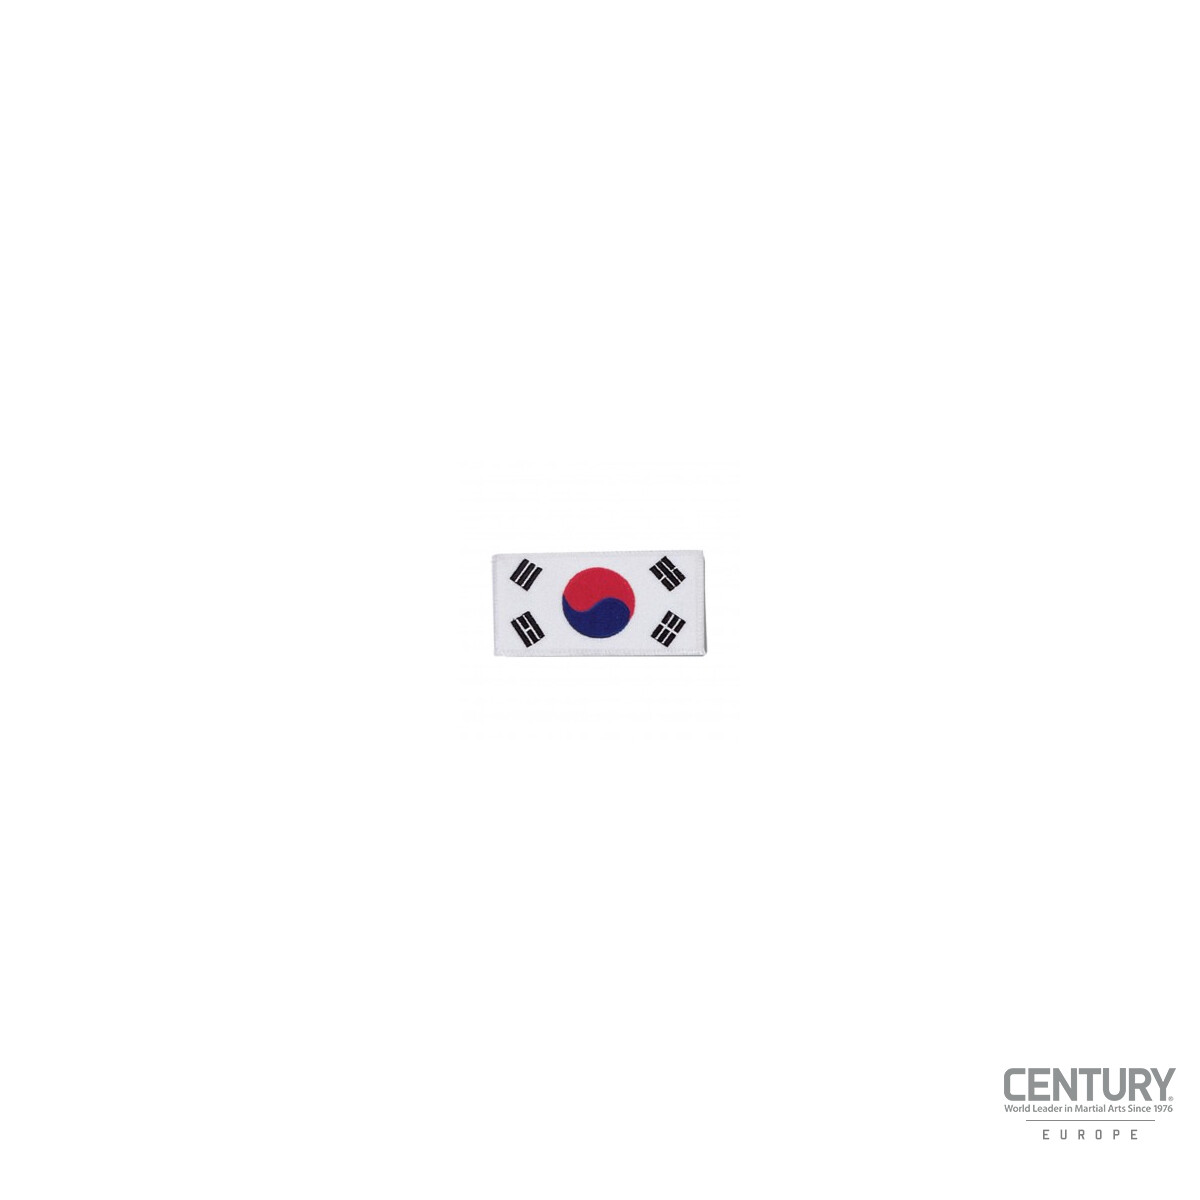 Landesflaggen Abzeichen Korea